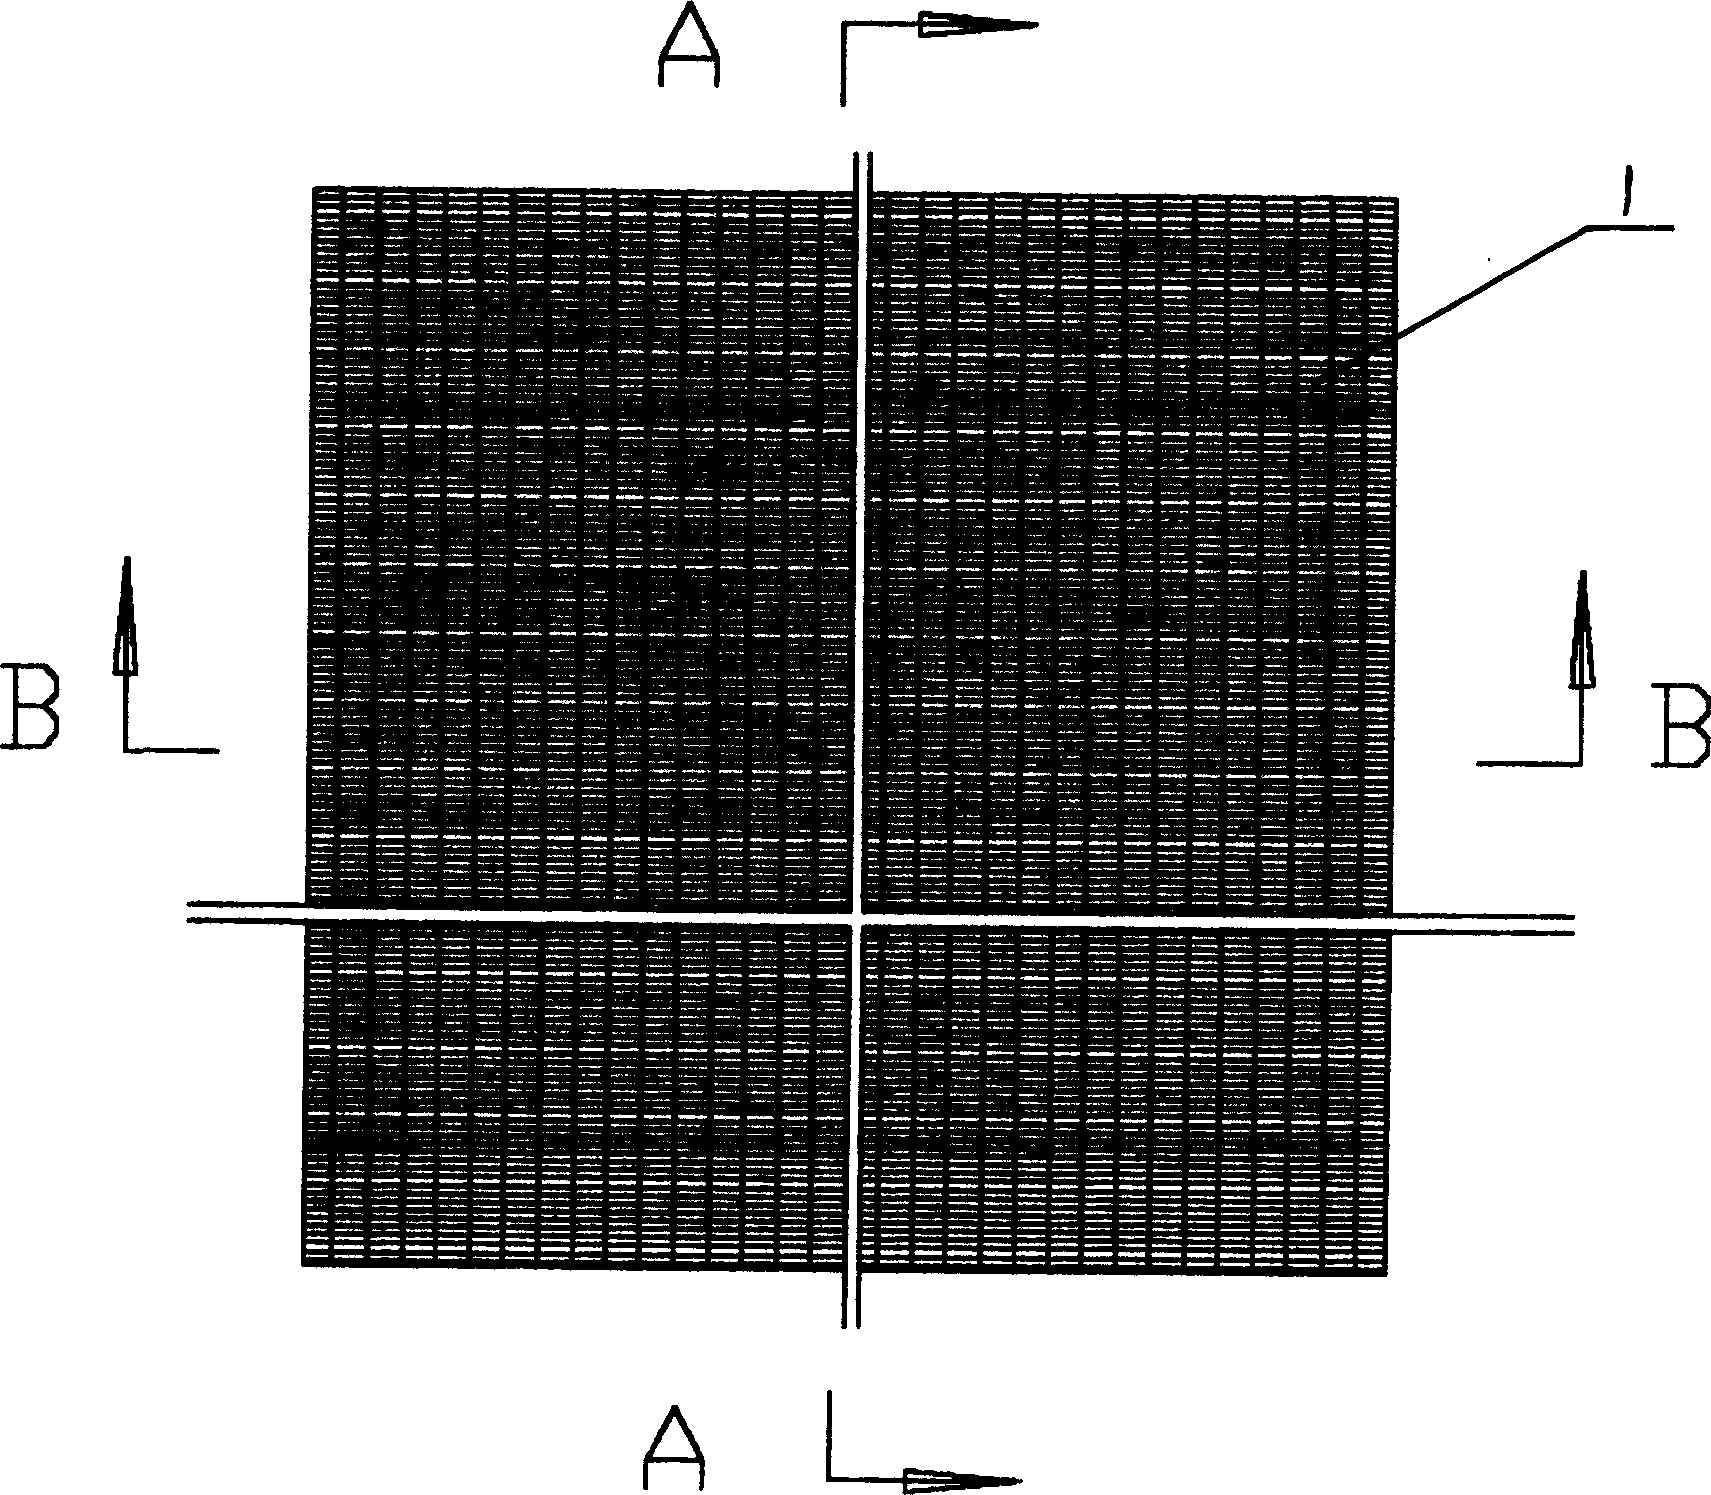 Placing type matting